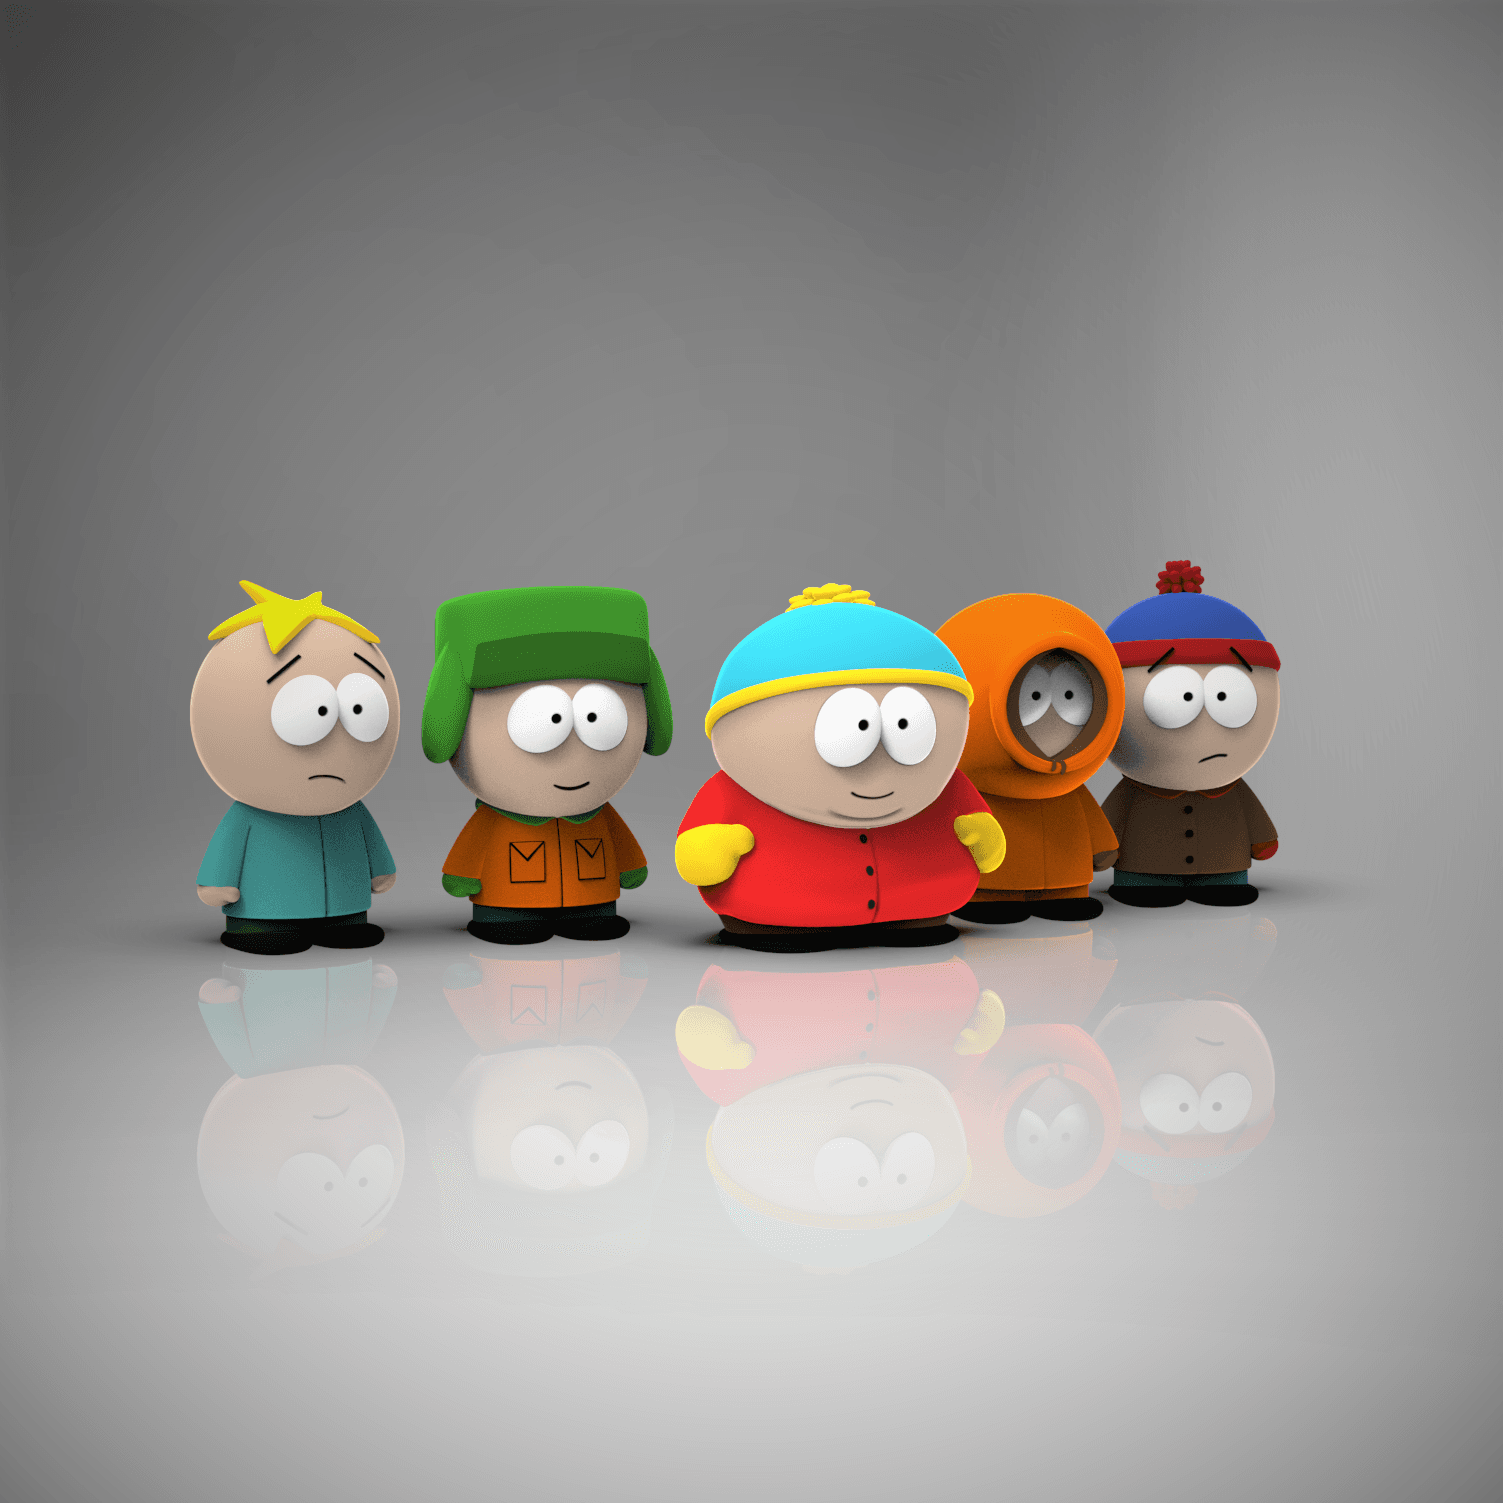 Kyle - South Park 3d model